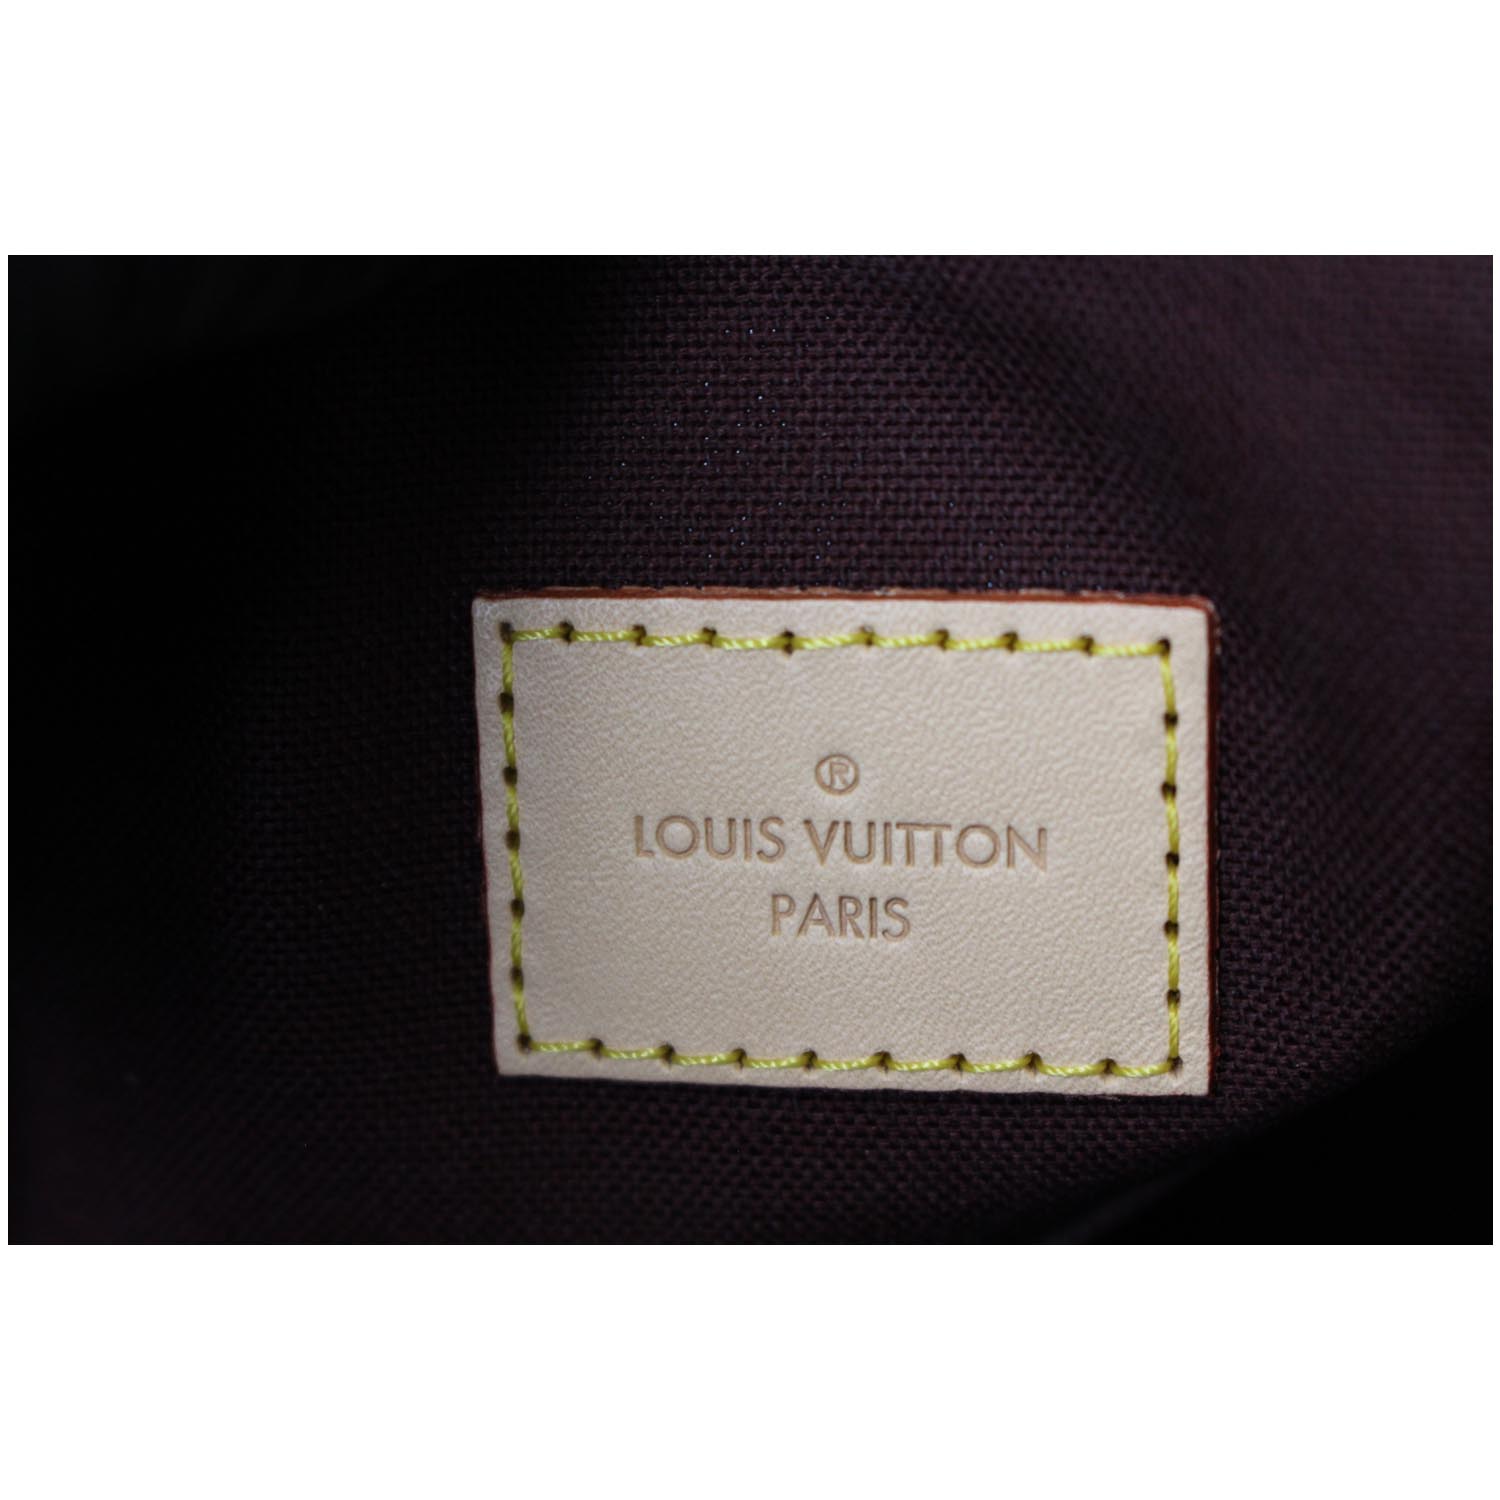 ❤REVIEW - Louis Vuitton Parioli MM DE 